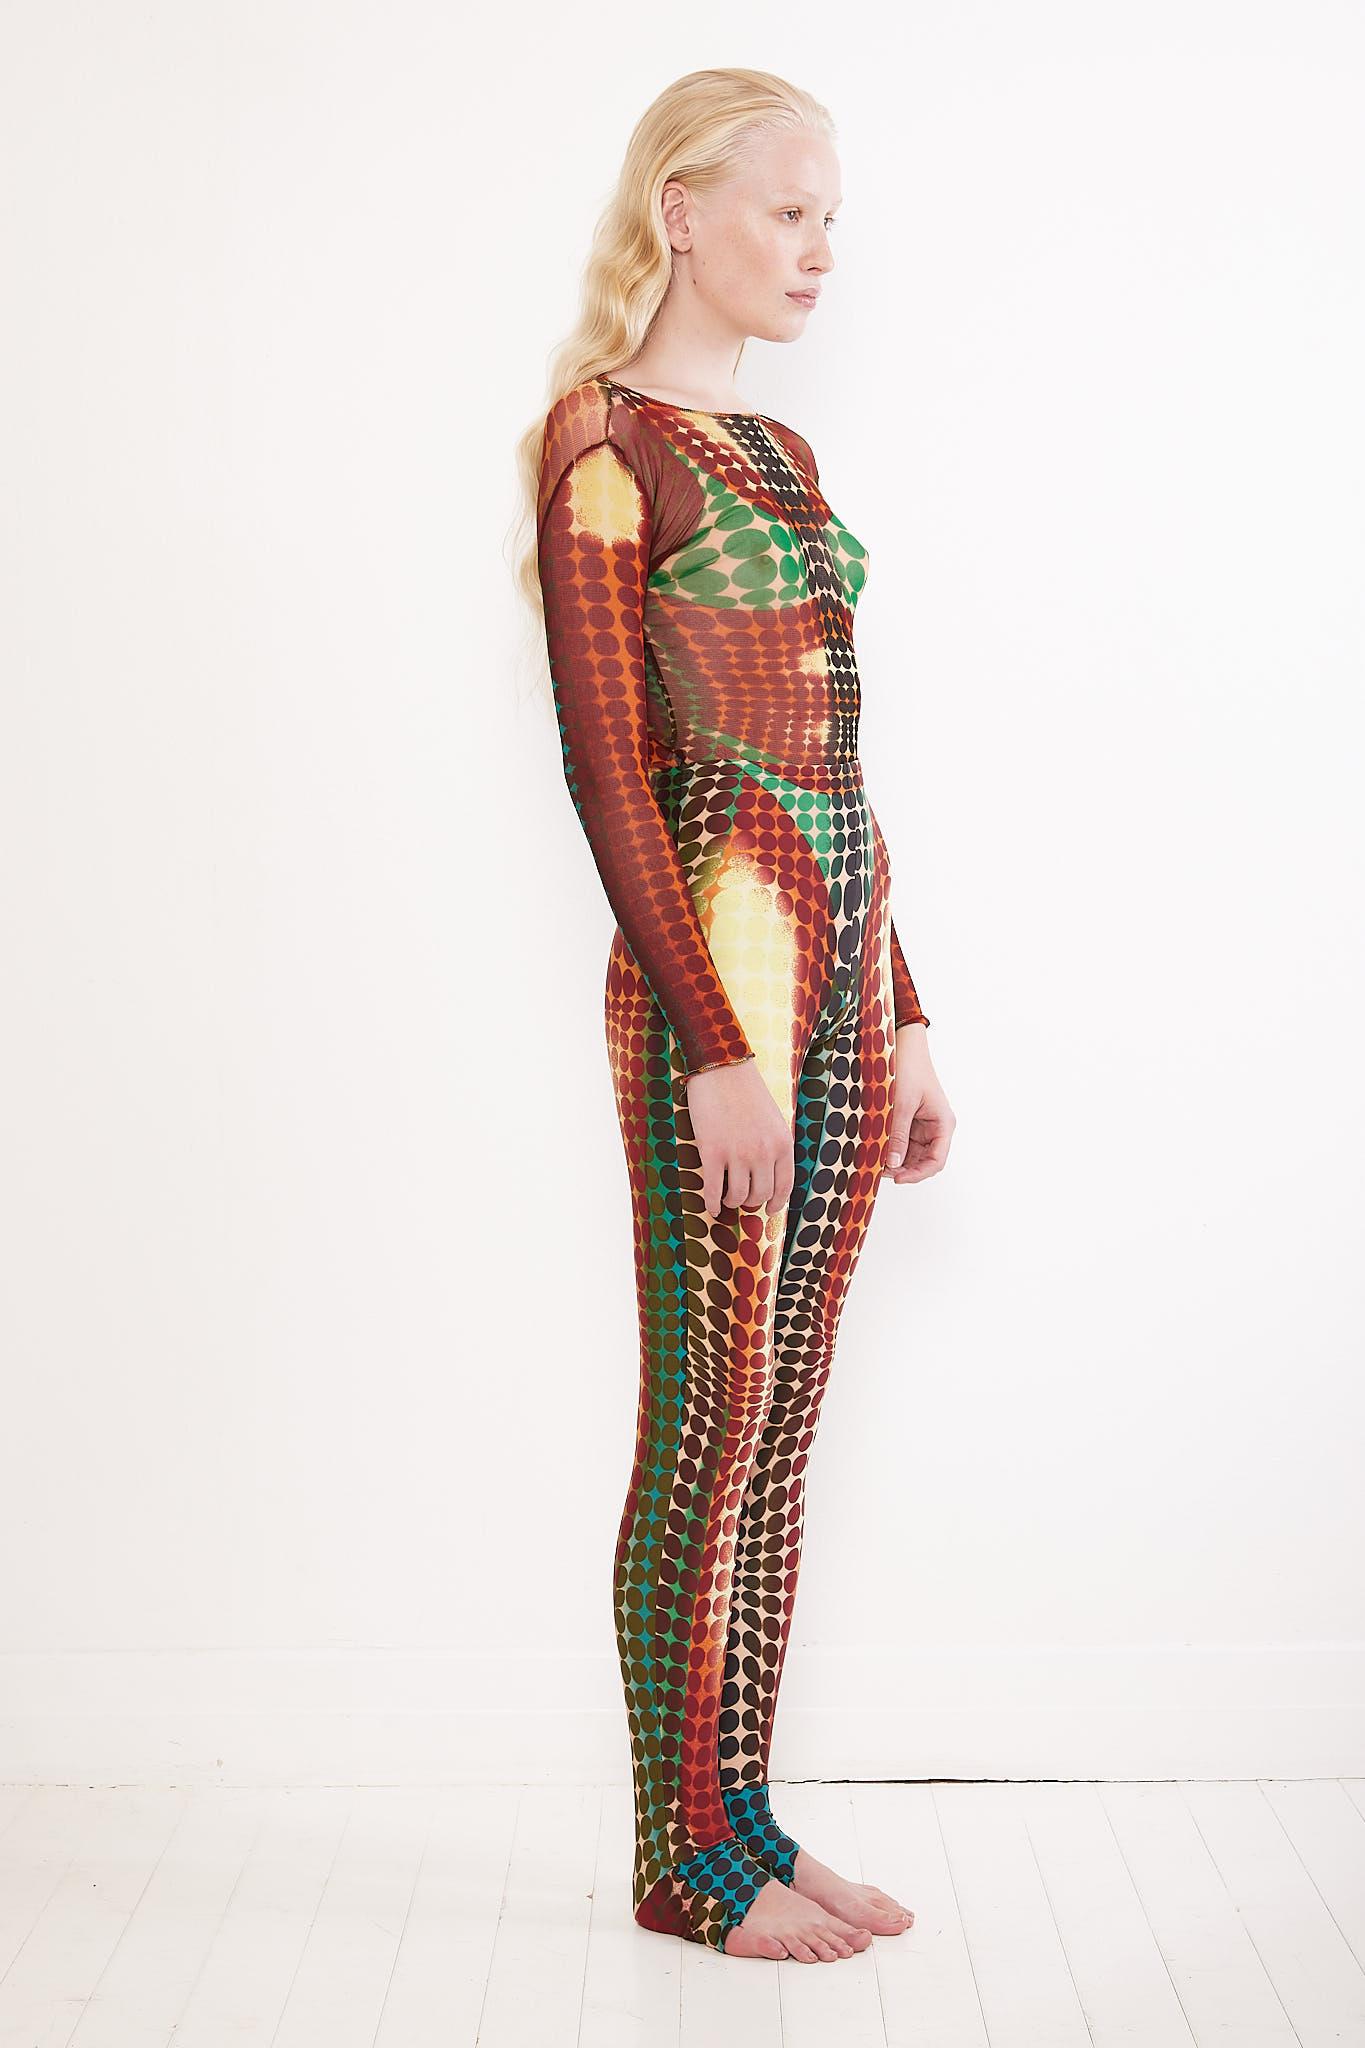 Die von Victor Vasarely inspirierten Cyberdot-Kollektionen von Jean Paul Gaultier, die auf die Mad Max-Kollektion 